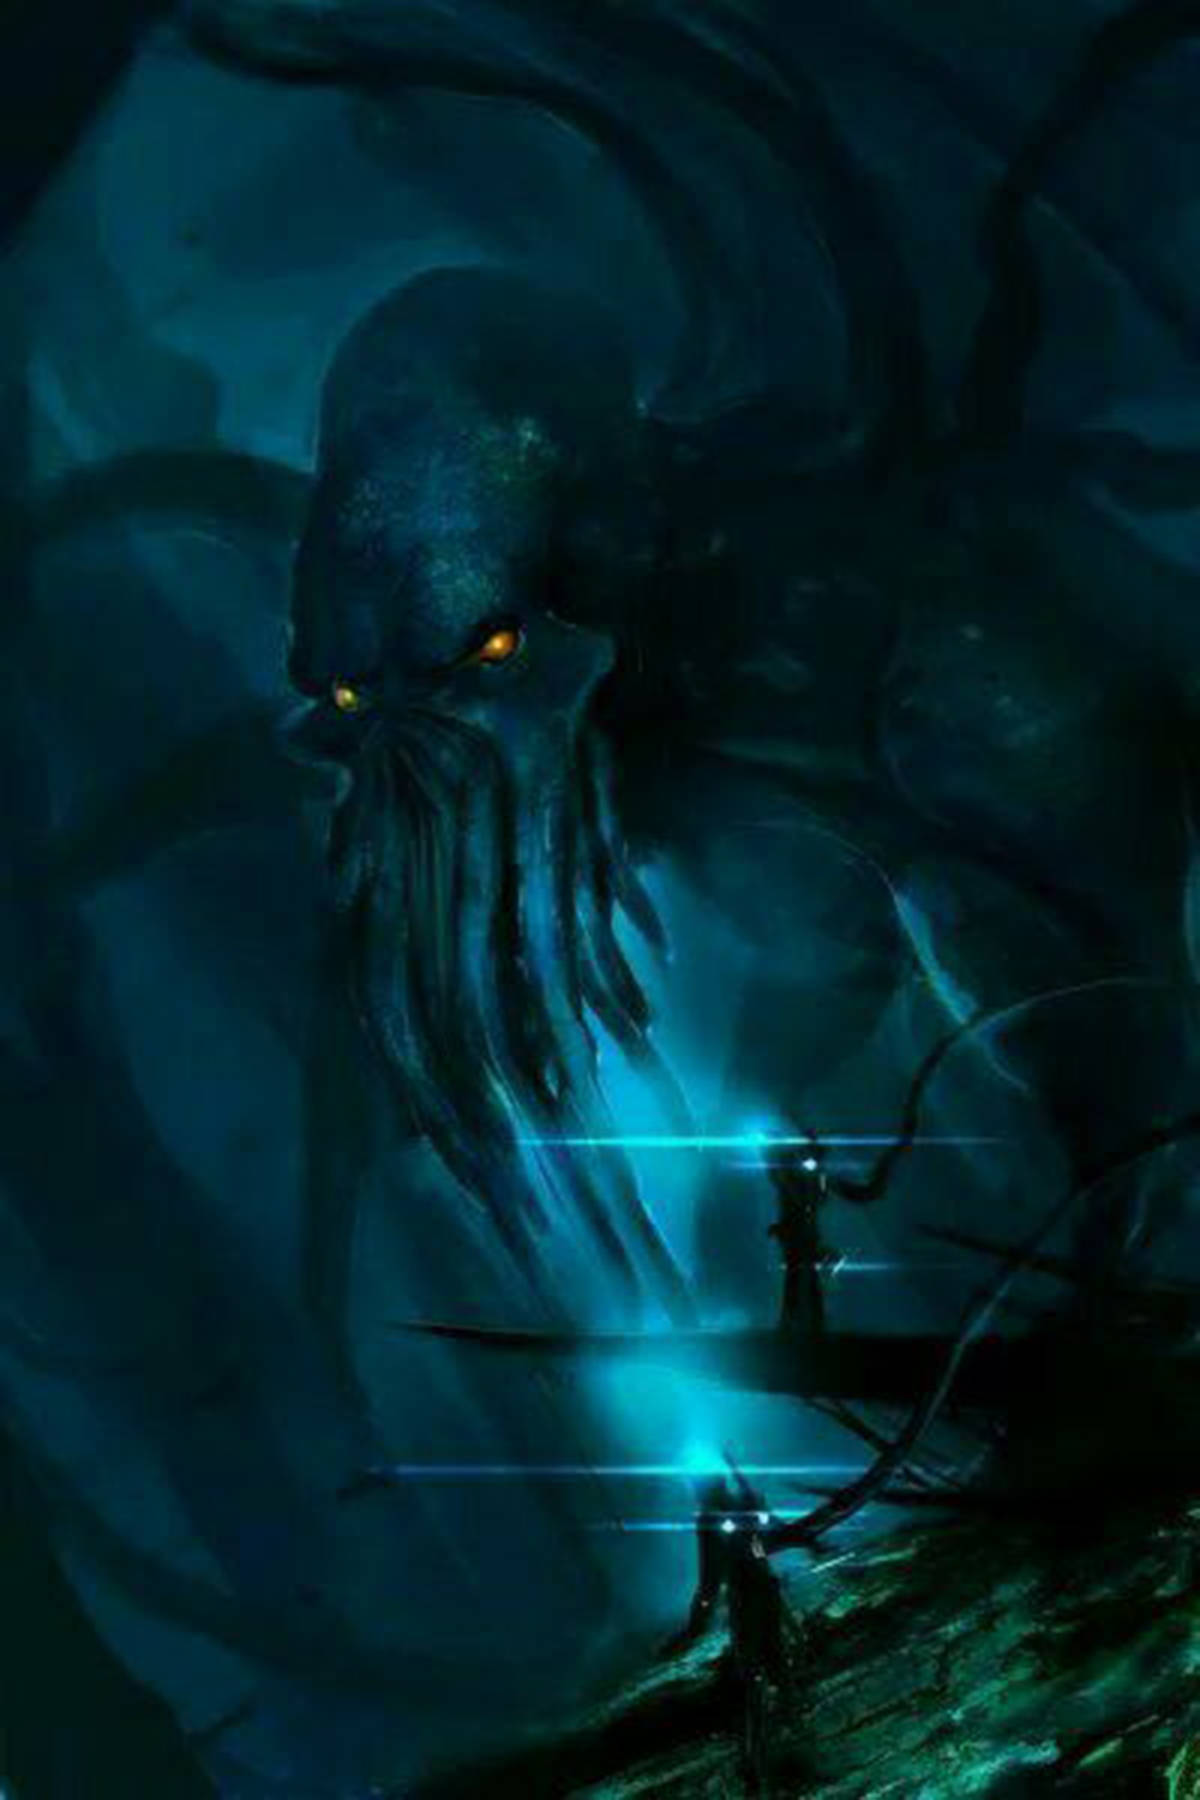 听说过深海恐惧症吗幽暗海底深海巨怪会让某些人浑身发抖